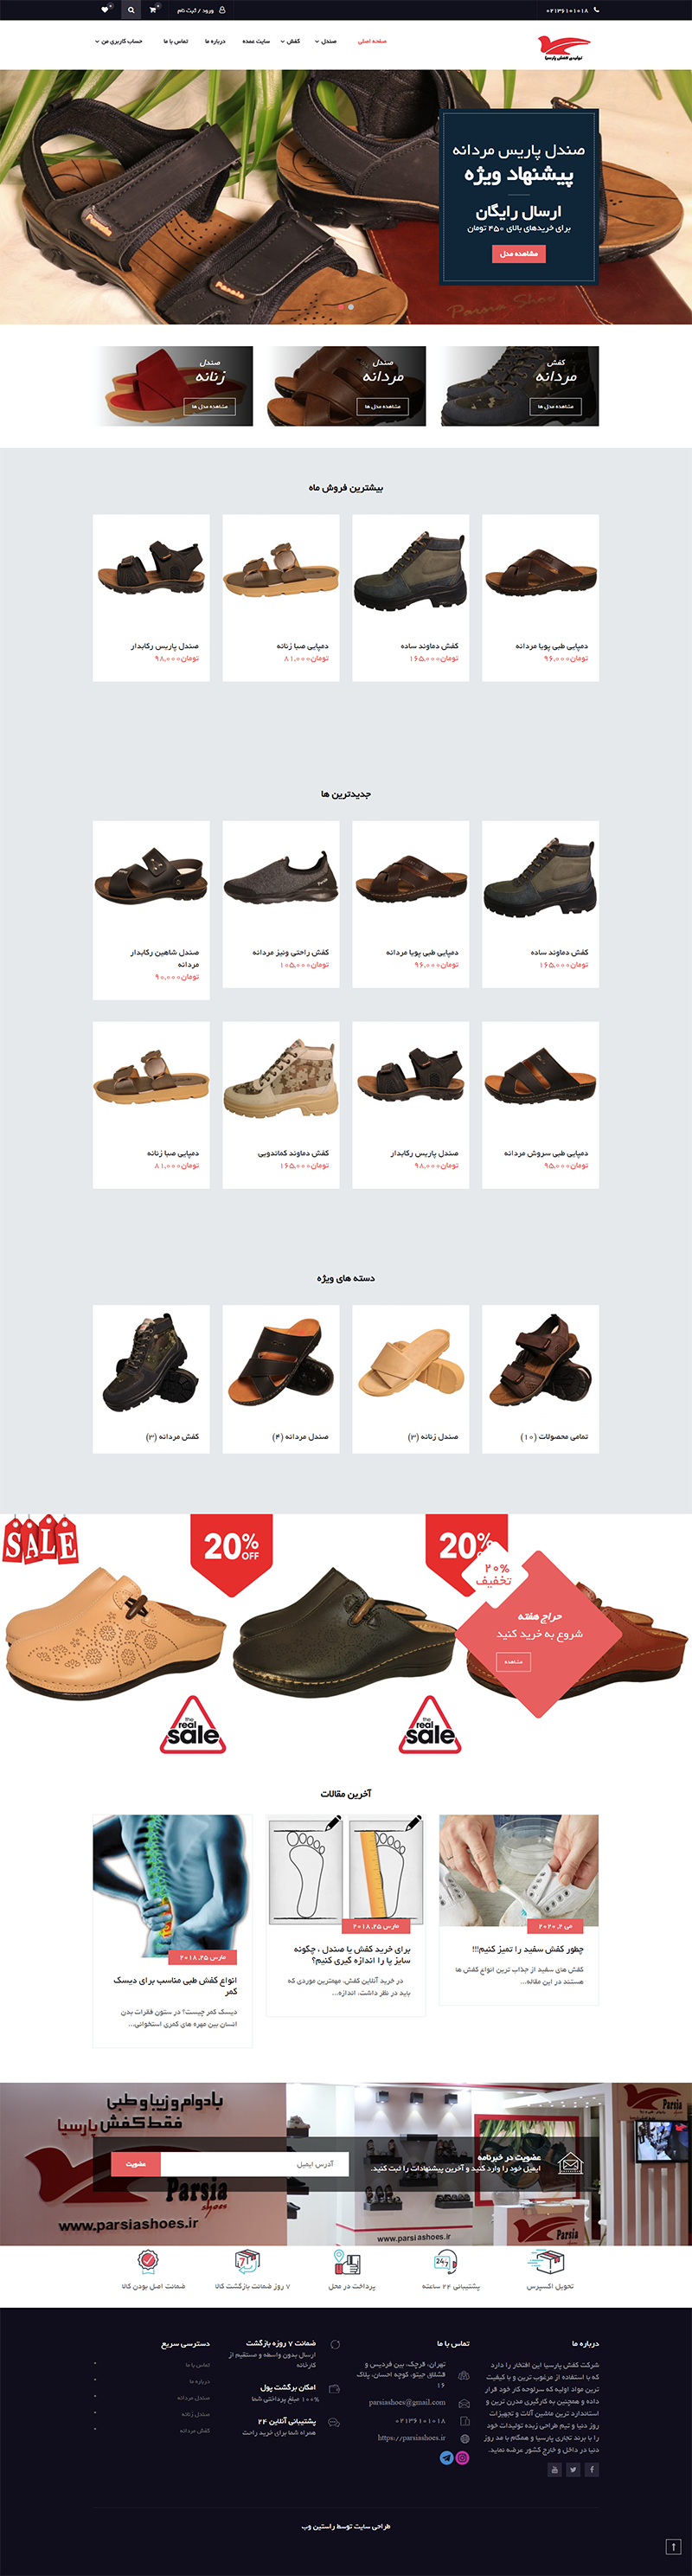 طراحی سایت تولیدی کفش پارسیا